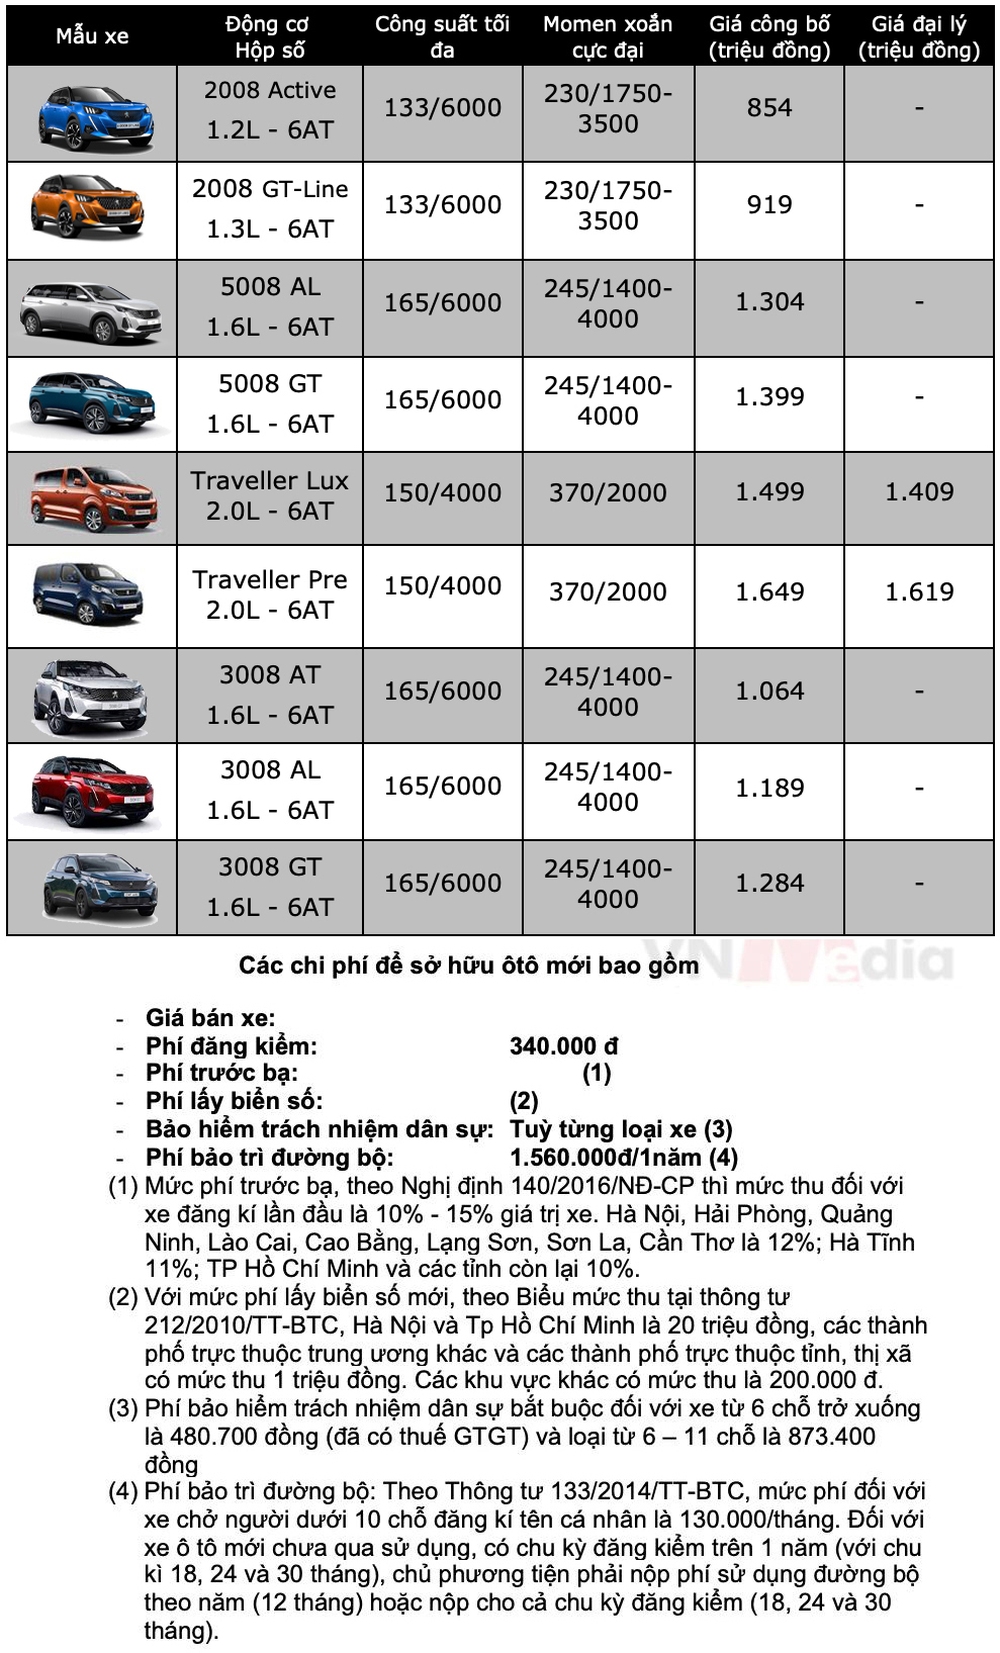 Bảng giá ô tô Peugeot tháng 4: Peugeot 5008 được ưu đãi 45 triệu đồng - Ảnh 3.